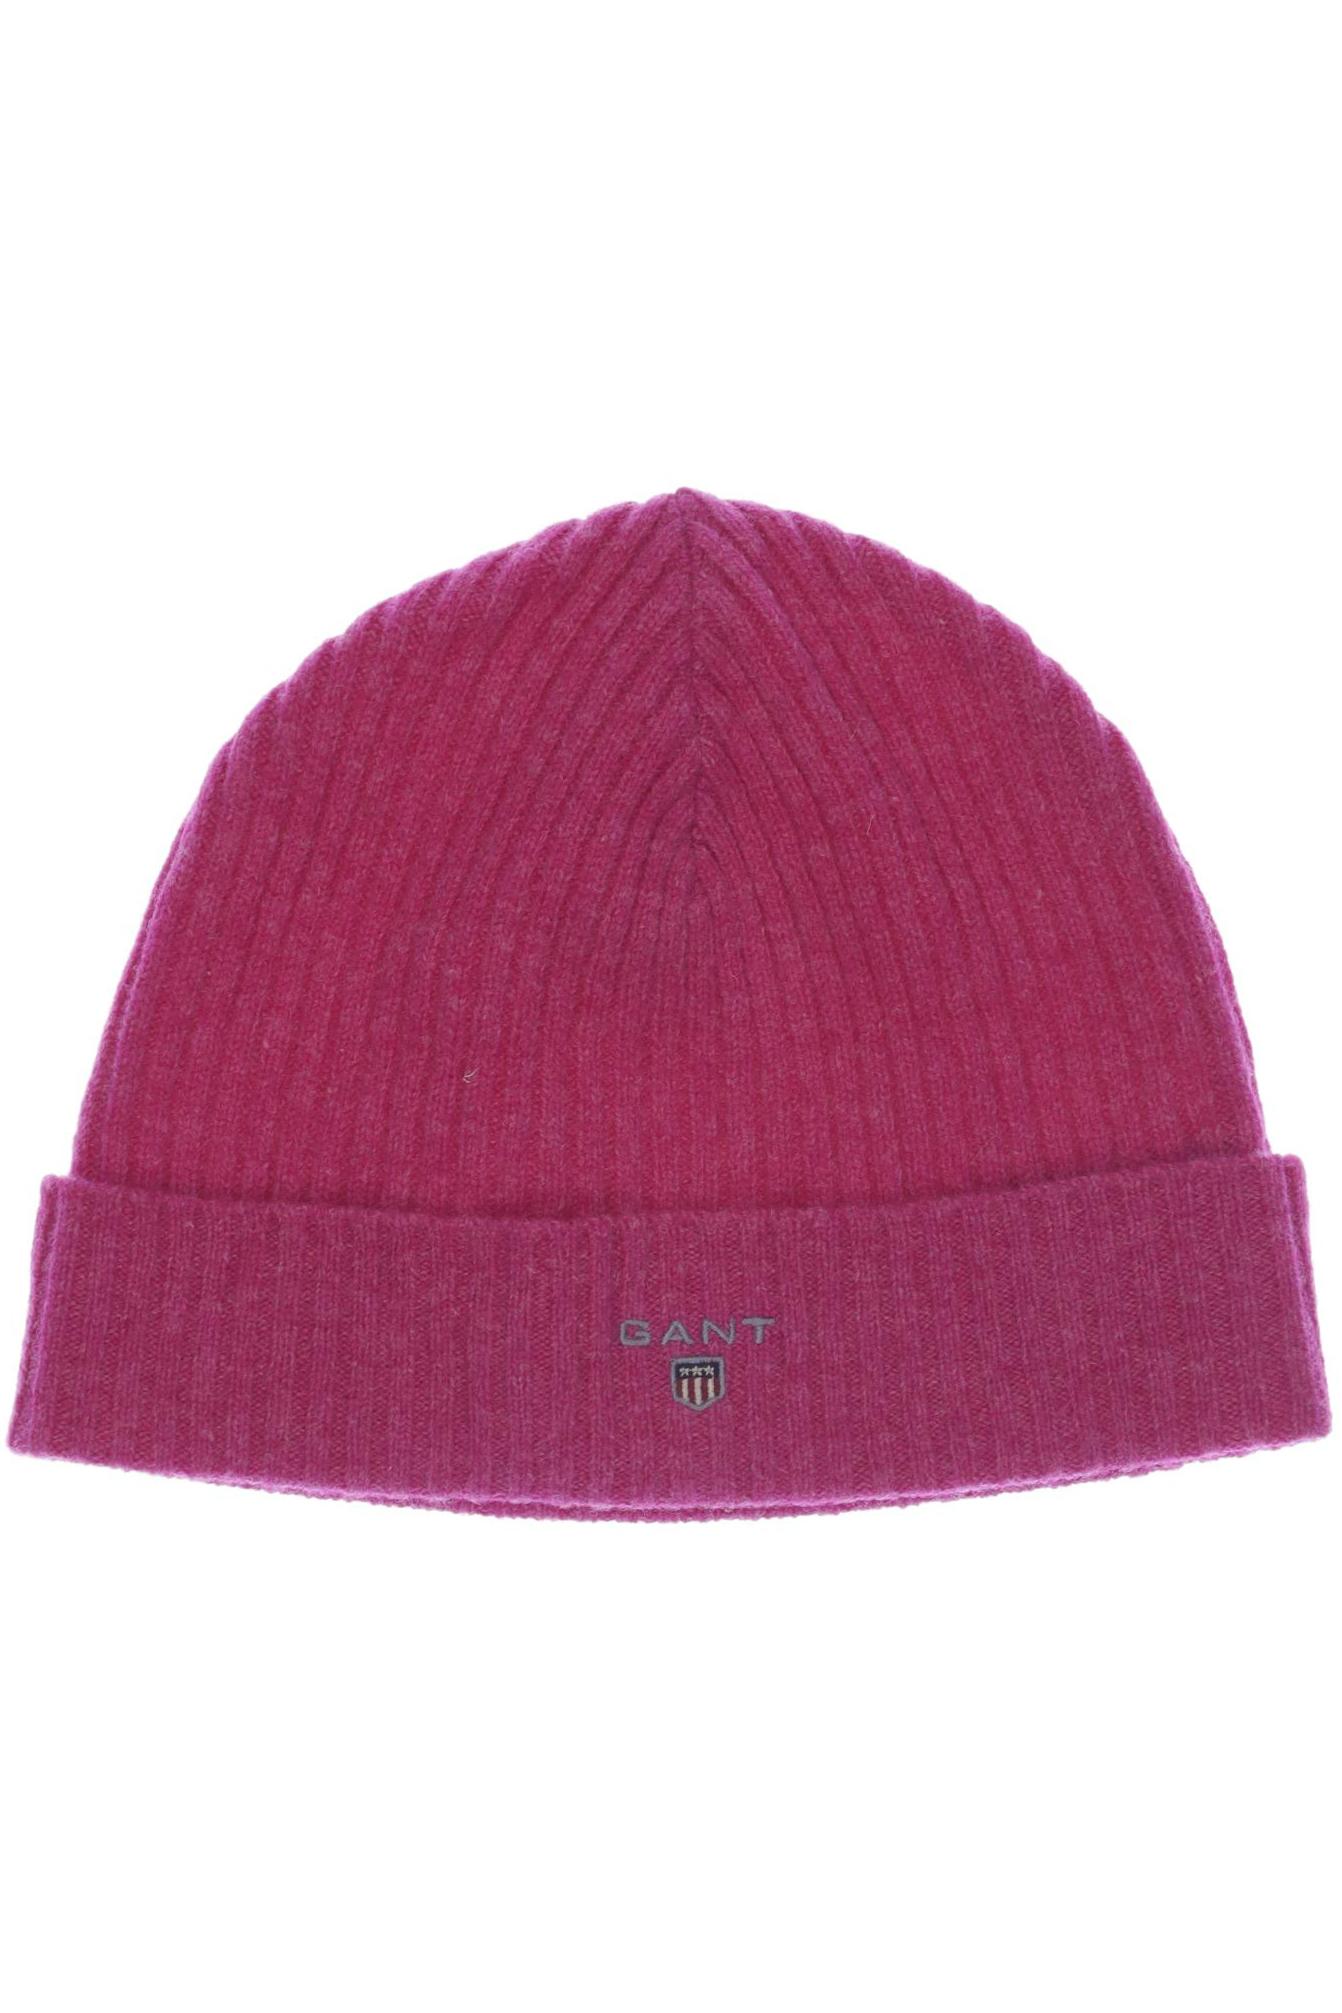 Gant Damen Hut/Mütze, pink, Gr. uni von Gant